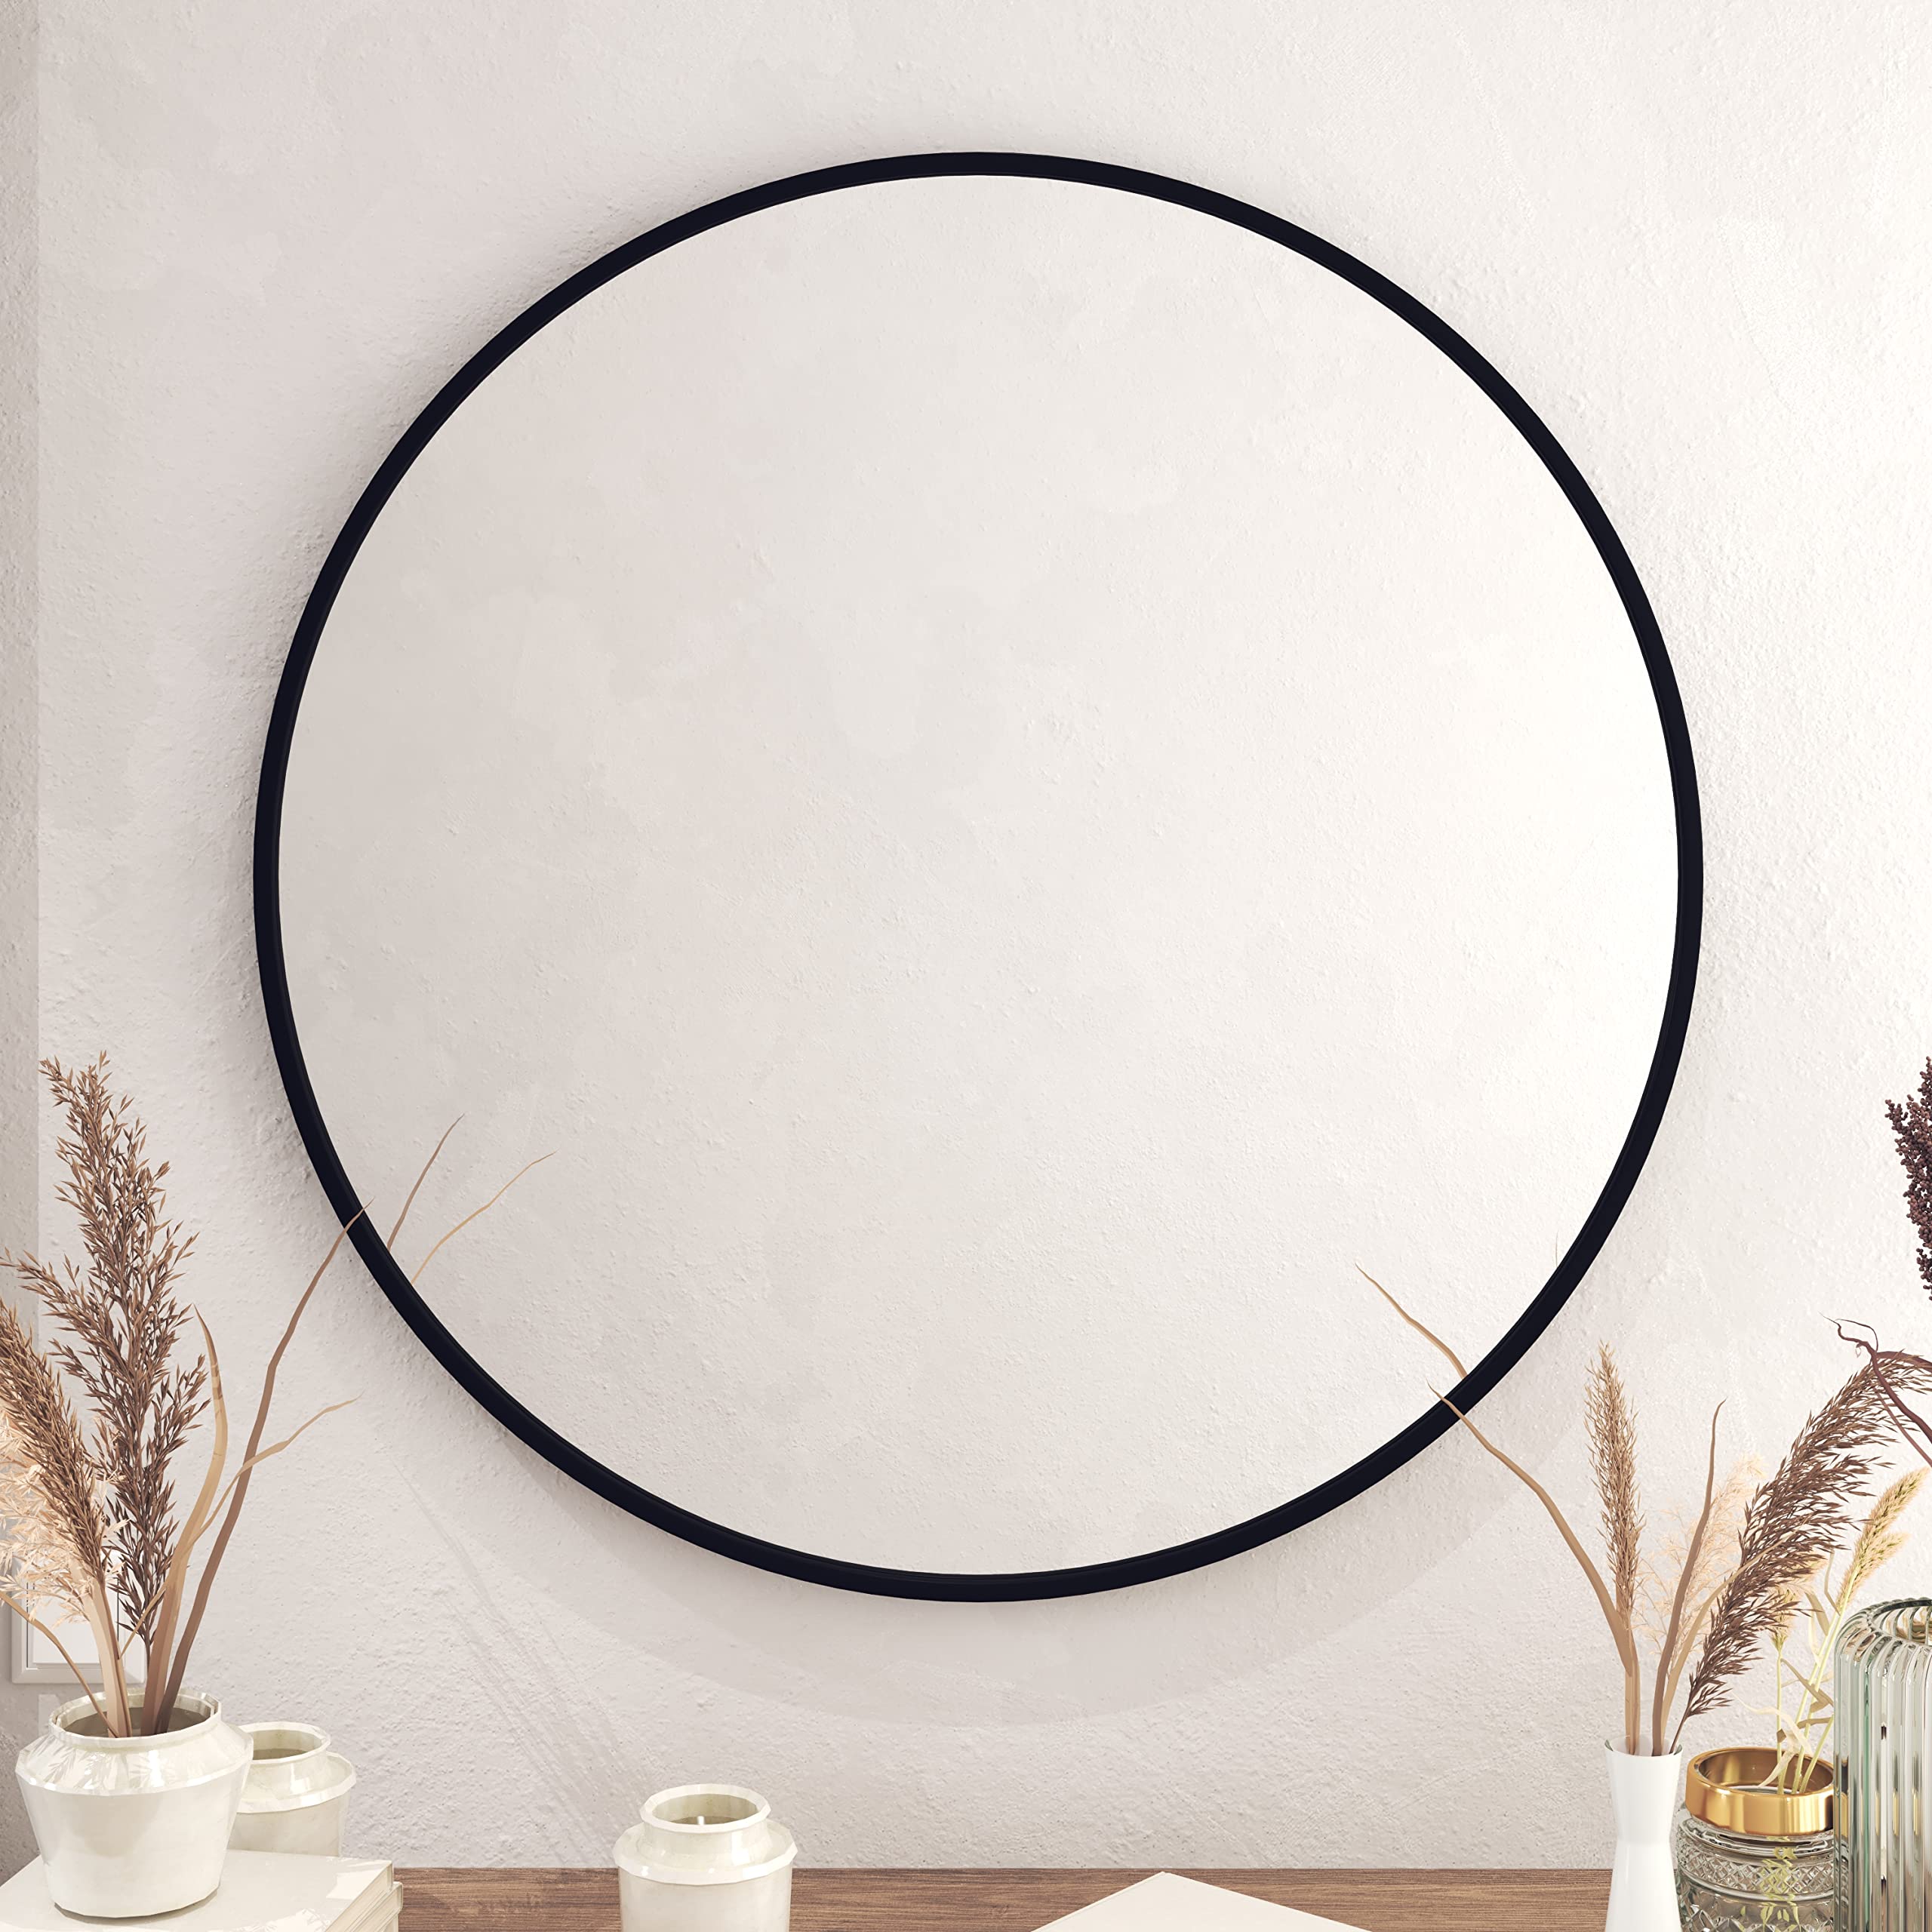 Black Circle Wall Mirror Modern Home Bathroom Decor